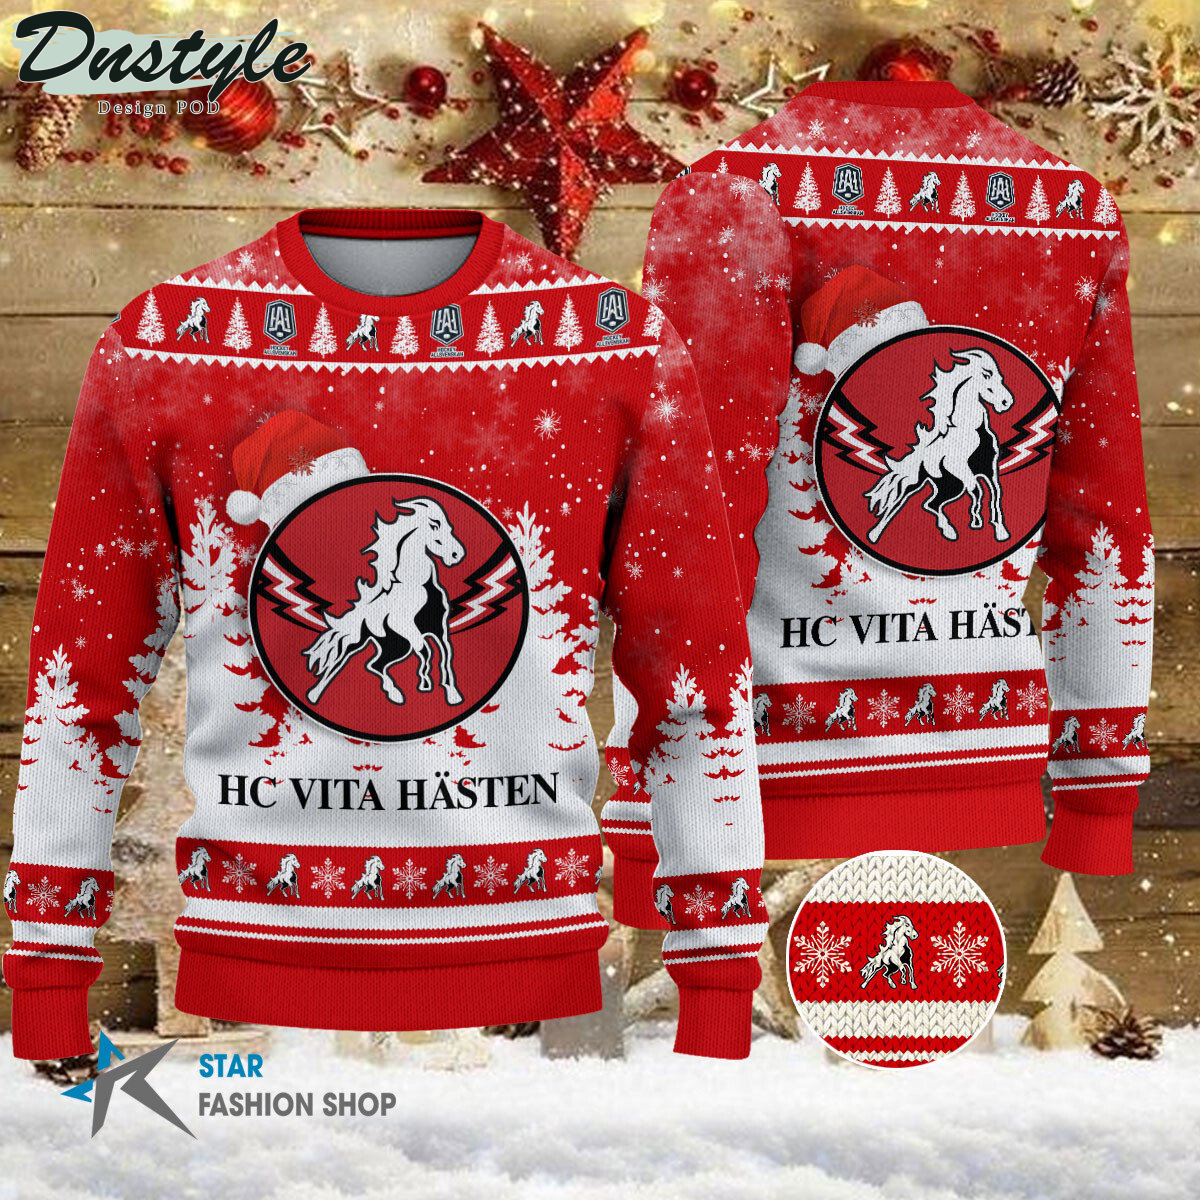 Malmo Redhawks ugly christmas sweater